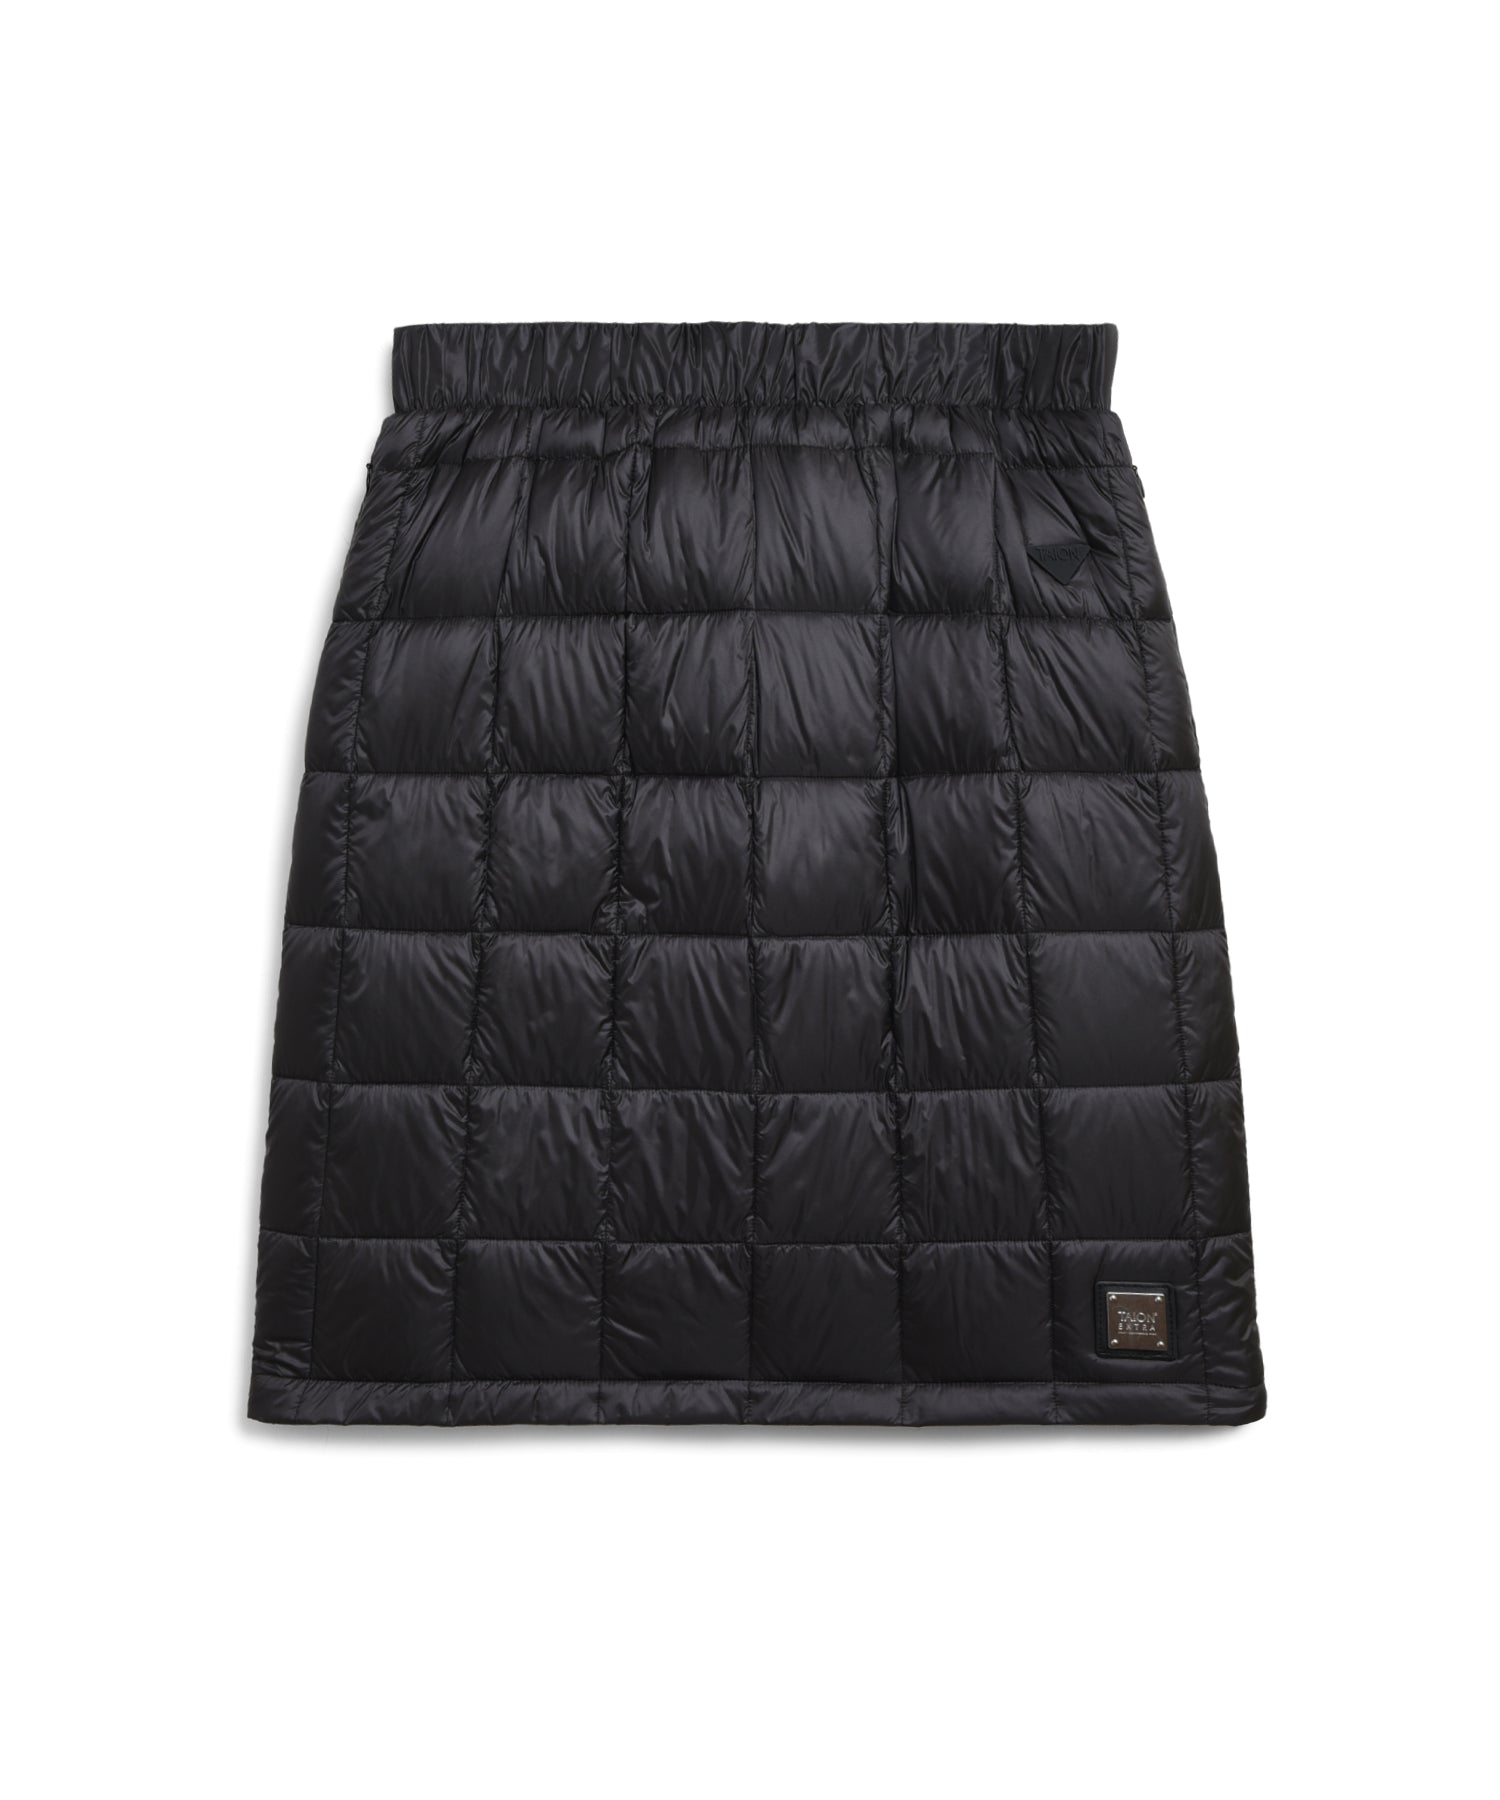 裾ファー…黒MsizeTAION EXTRA 限定裾ファー\u0026ボレロ+スカートセット 黒Bボタン M